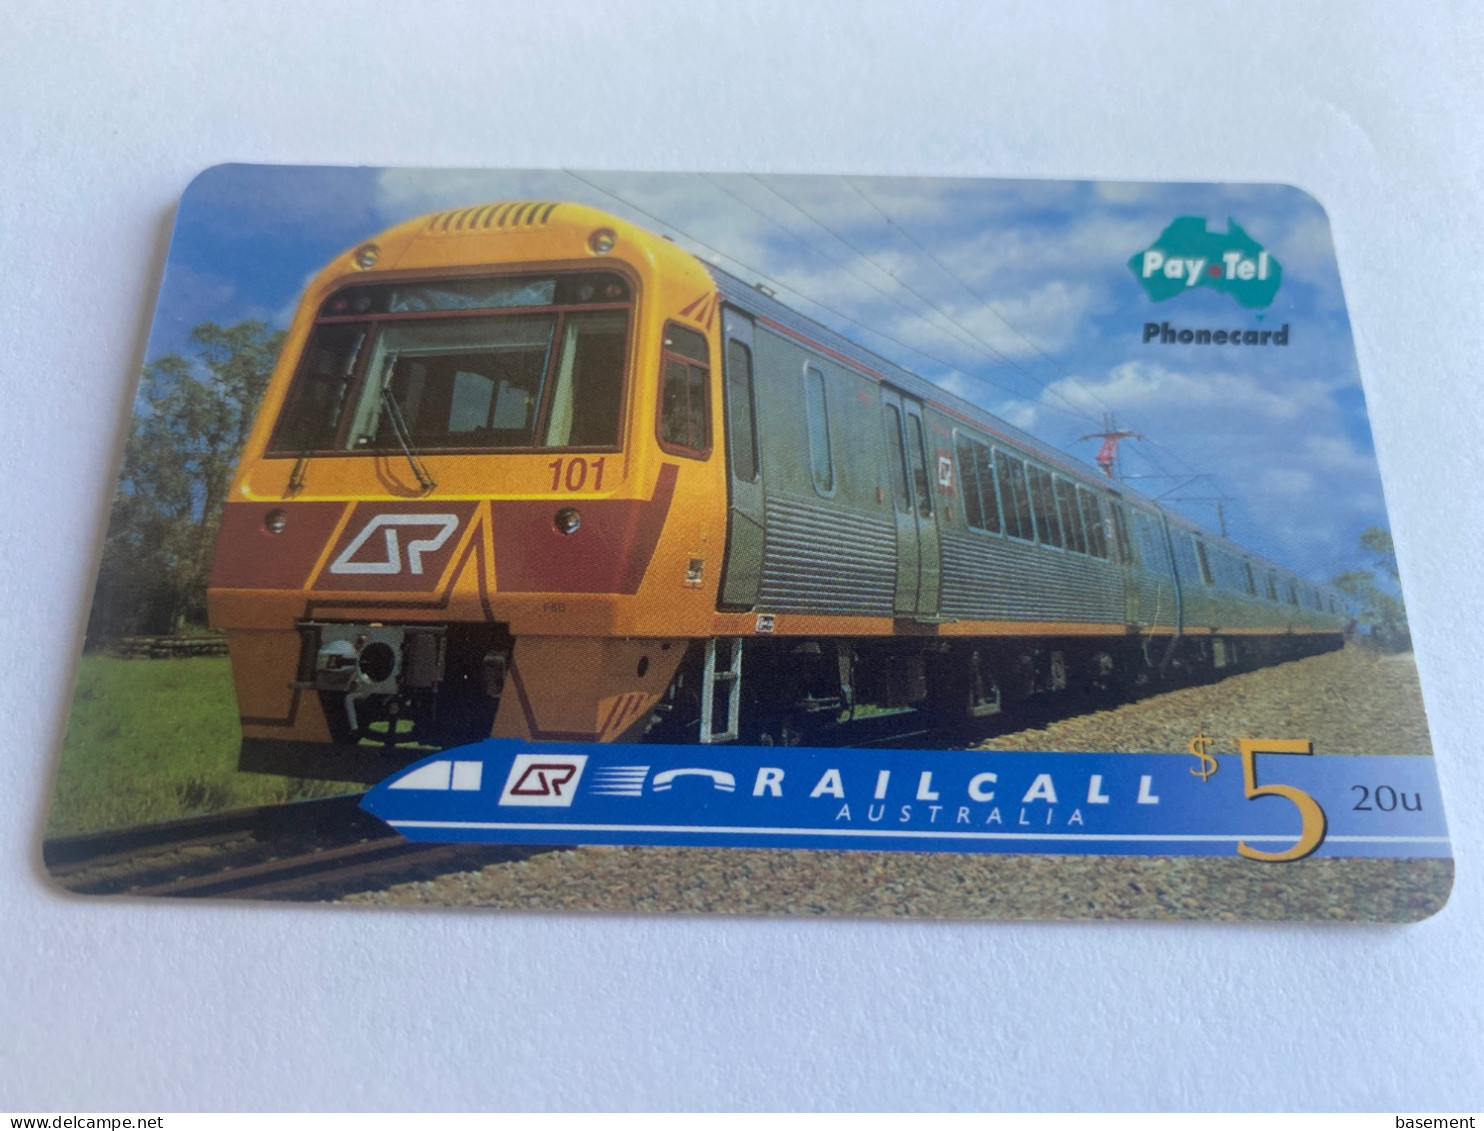 1:042 - Australia Pay Tel RailCall Train - Australie